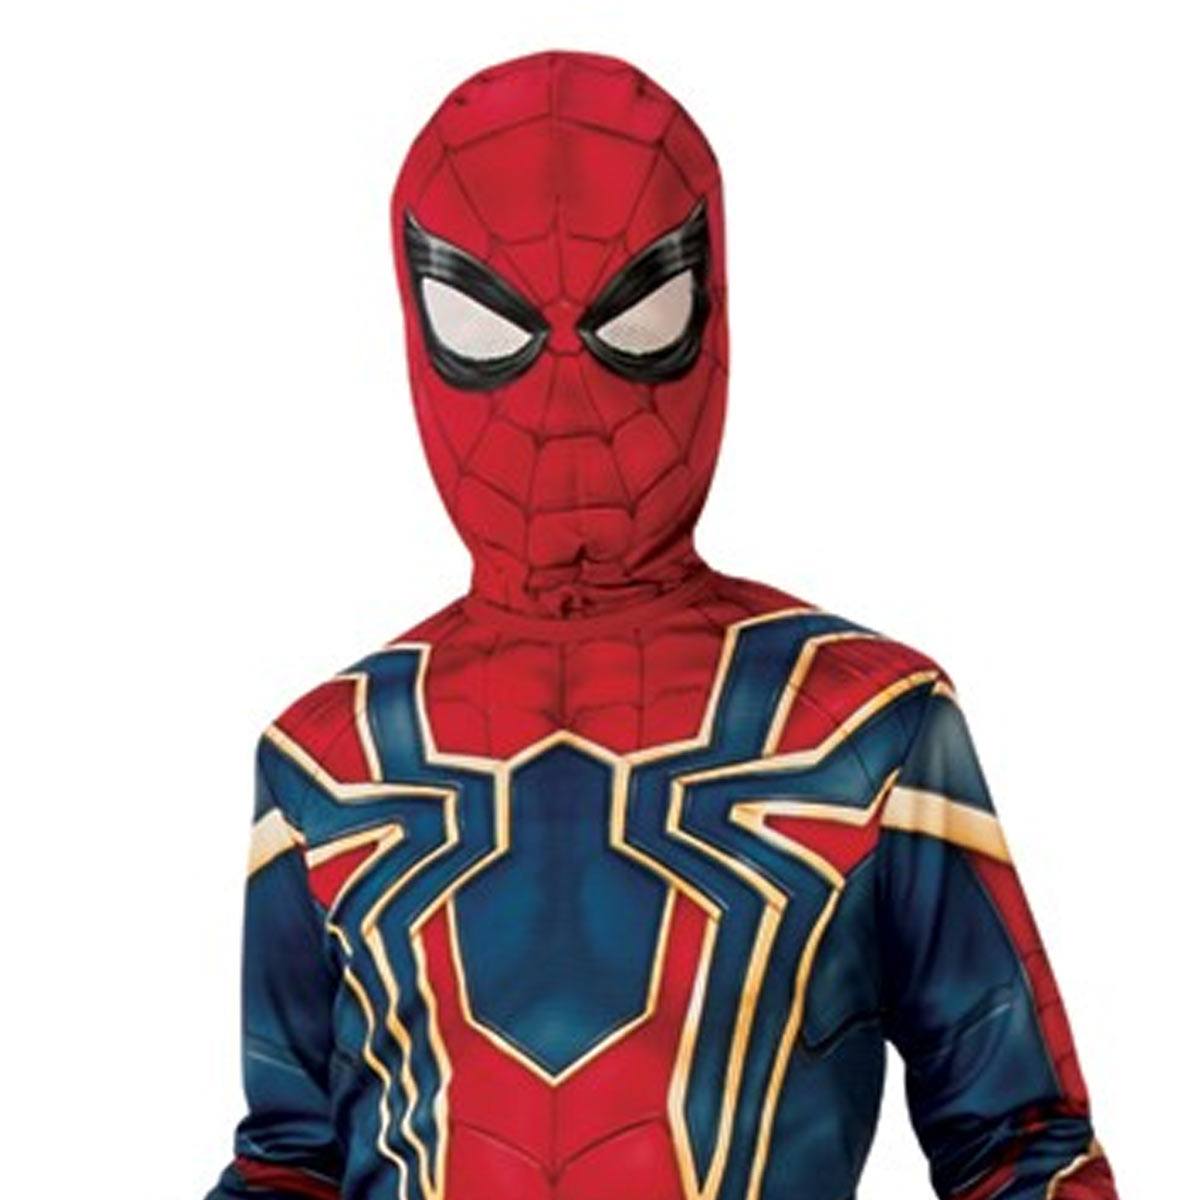 スパイダーマン 子供用 コスプレ コスチューム ハロウィン スーツ Holloween Spider-Man